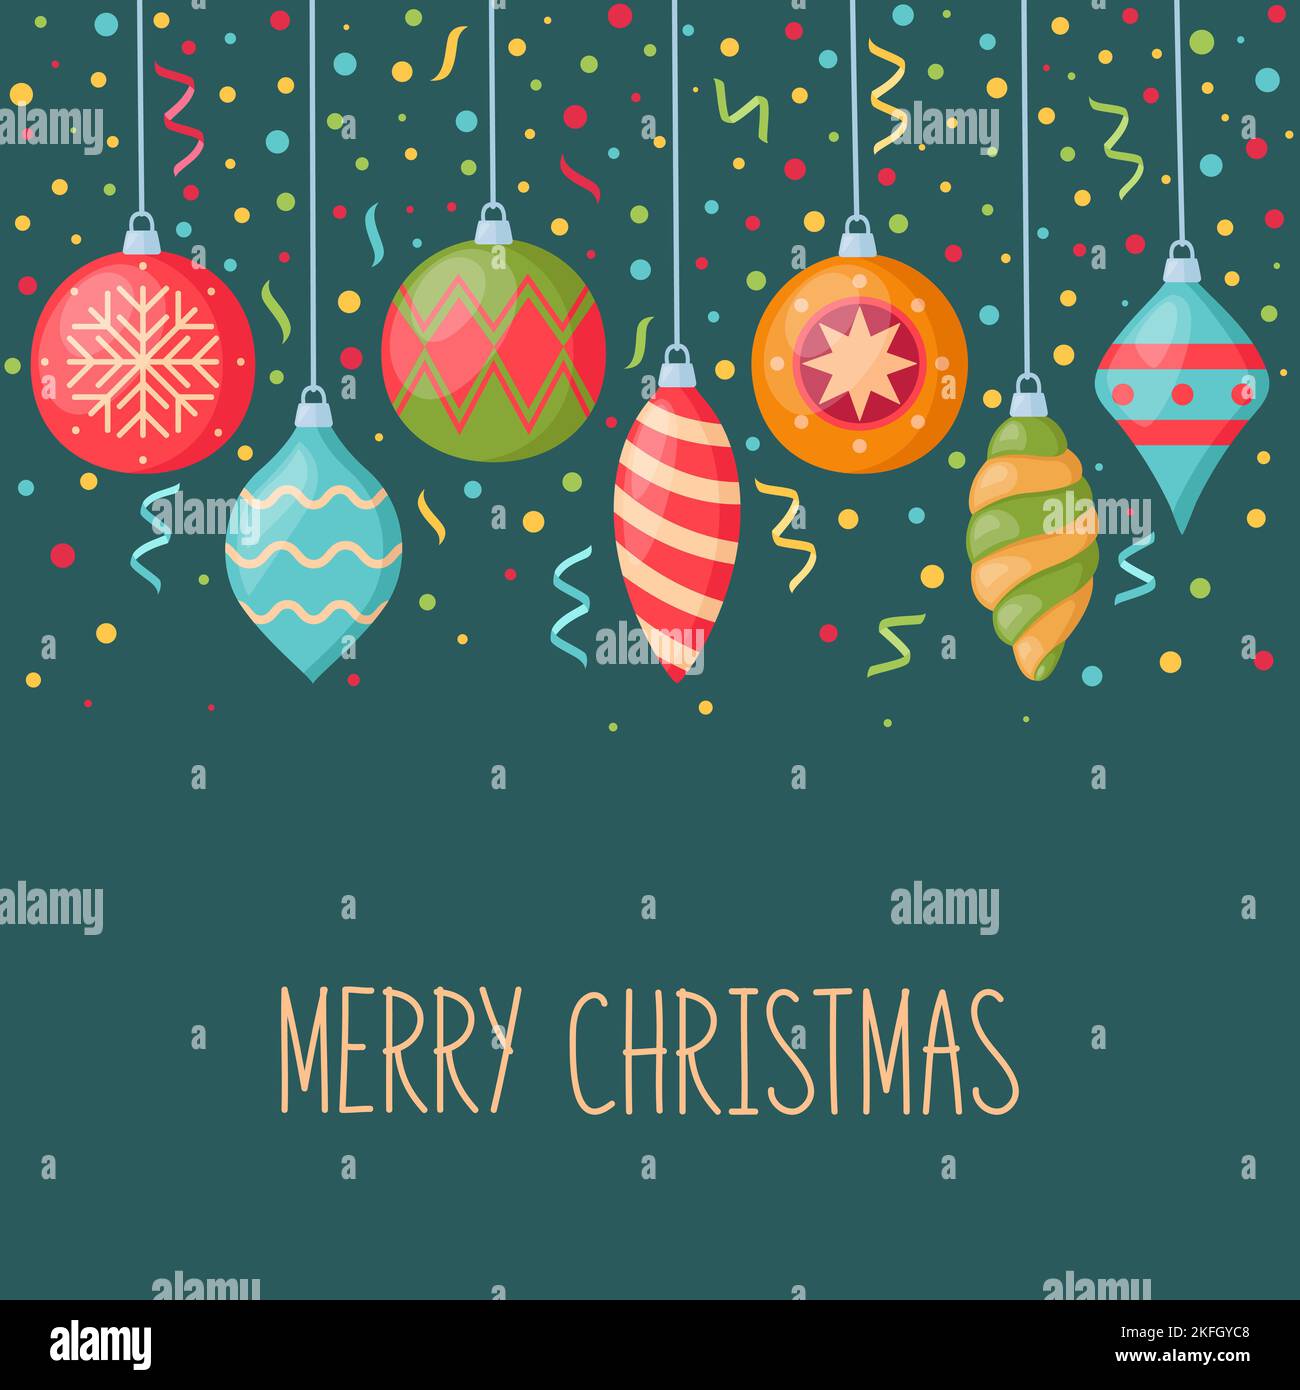 Weihnachts- und Neujahrskarte mit hängenden Dekorationen für weihnachtsbaum und Konfetti, Vektorgrafik Stock Vektor